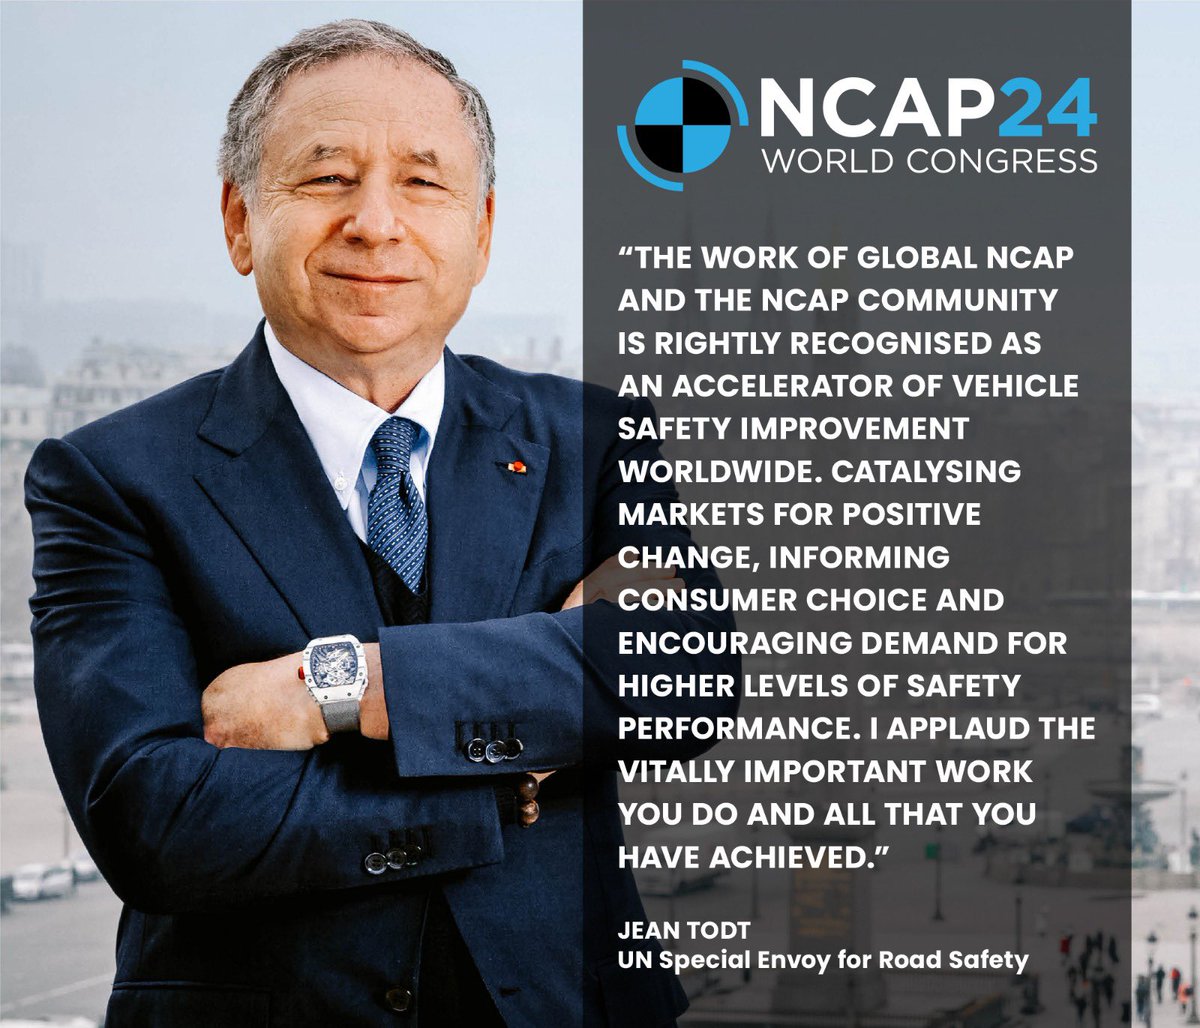 Comienza Congreso Mundial #NCAP24 “El trabajo de @GlobalNCAP y el de todos los Programas #NCAP es reconocido, y con razón, como un acelerador de la mejora de la seguridad vehicular en todo el mundo. Aplaudo su trabajo de vital importancia y los logros que han alcanzado”